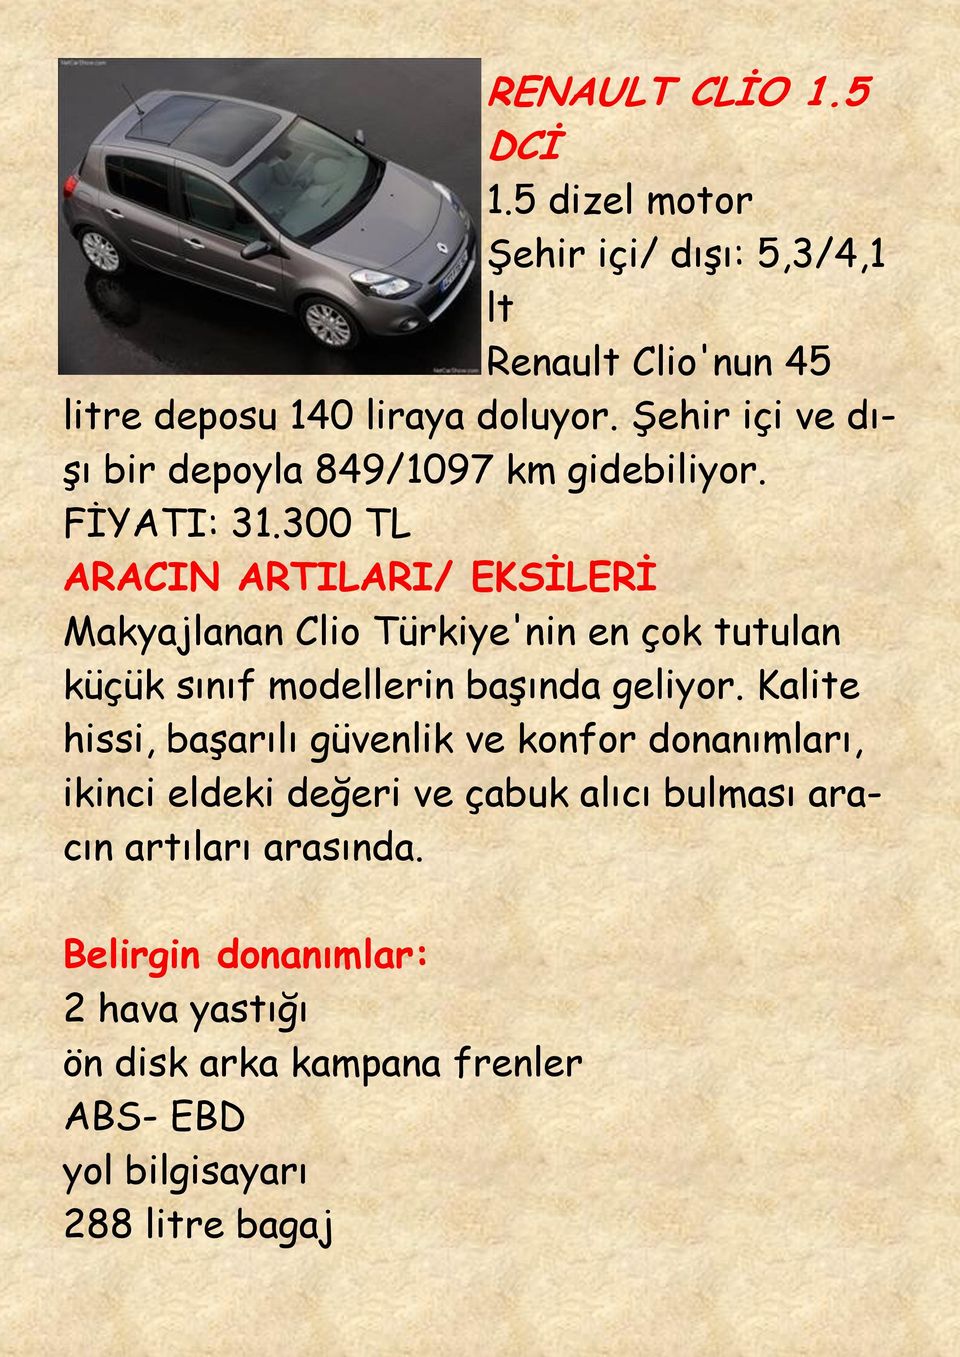 300 TL Makyajlanan Clio Türkiye'nin en çok tutulan küçük sınıf modellerin başında geliyor.